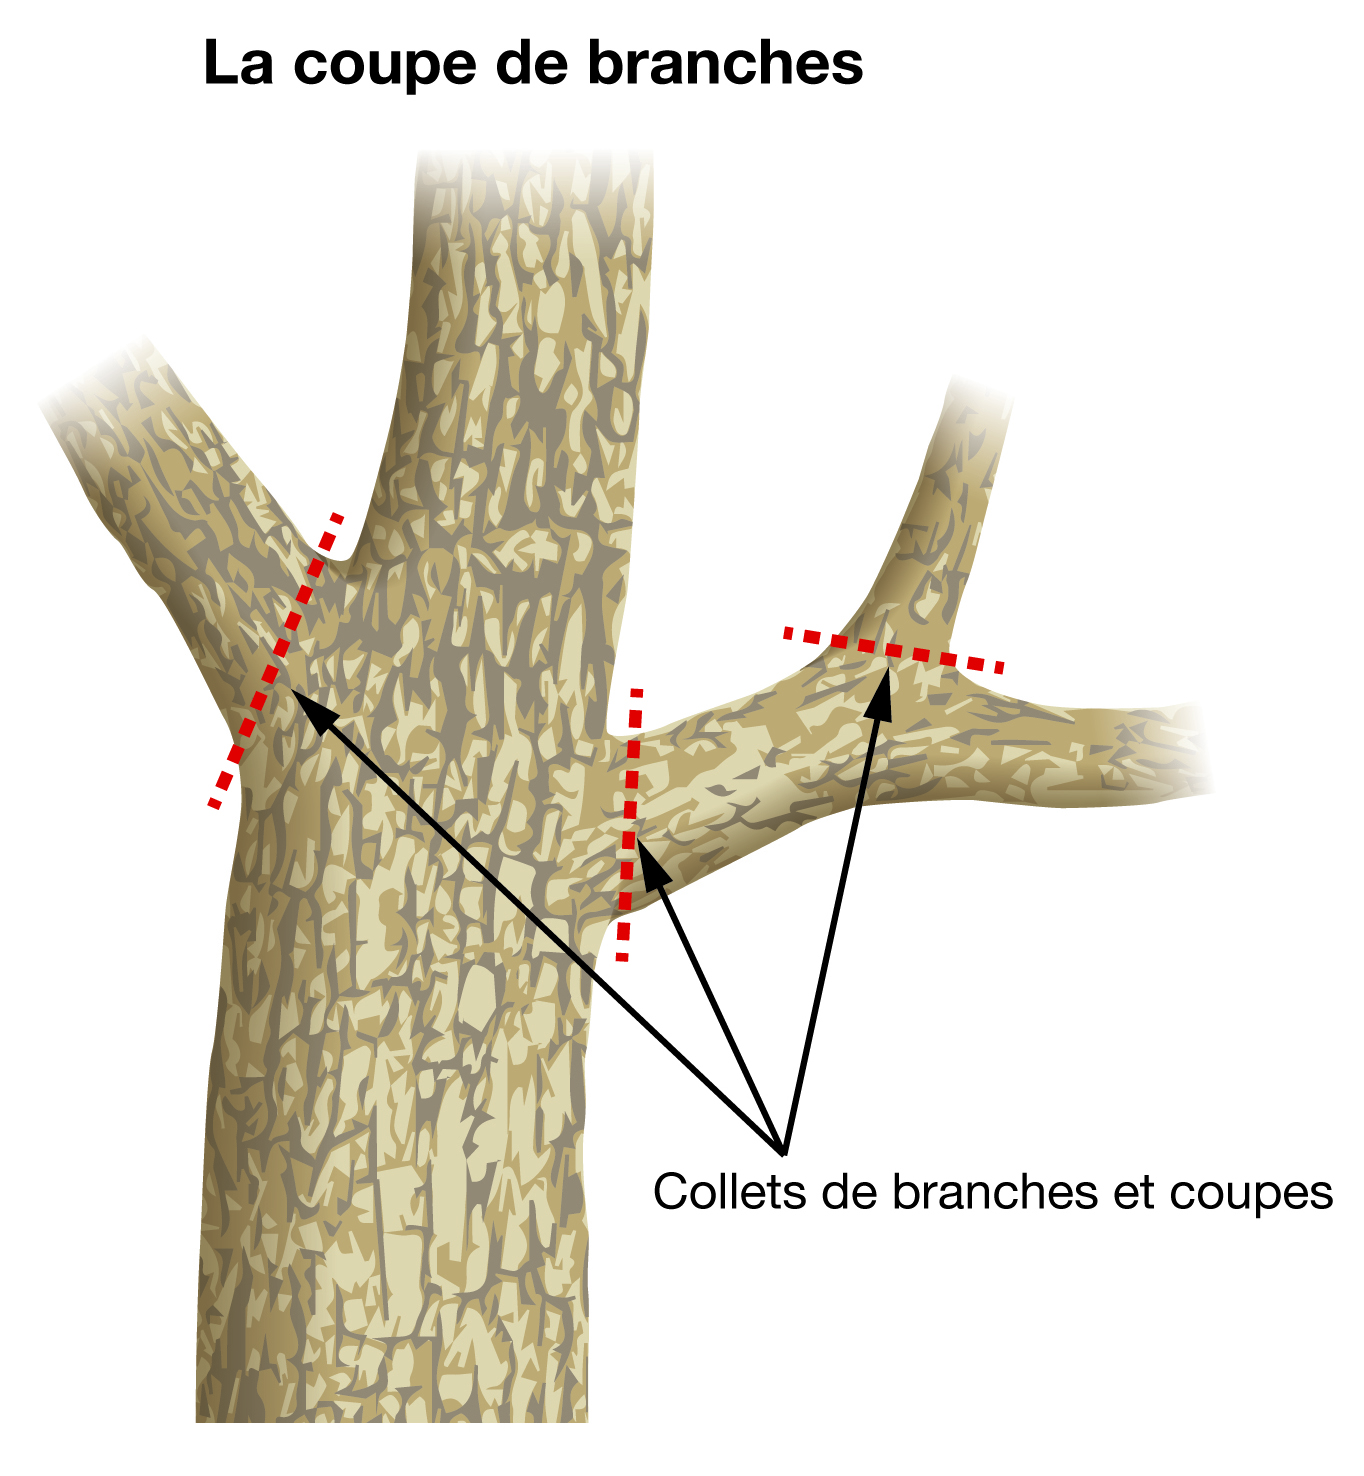 La coupe de branches